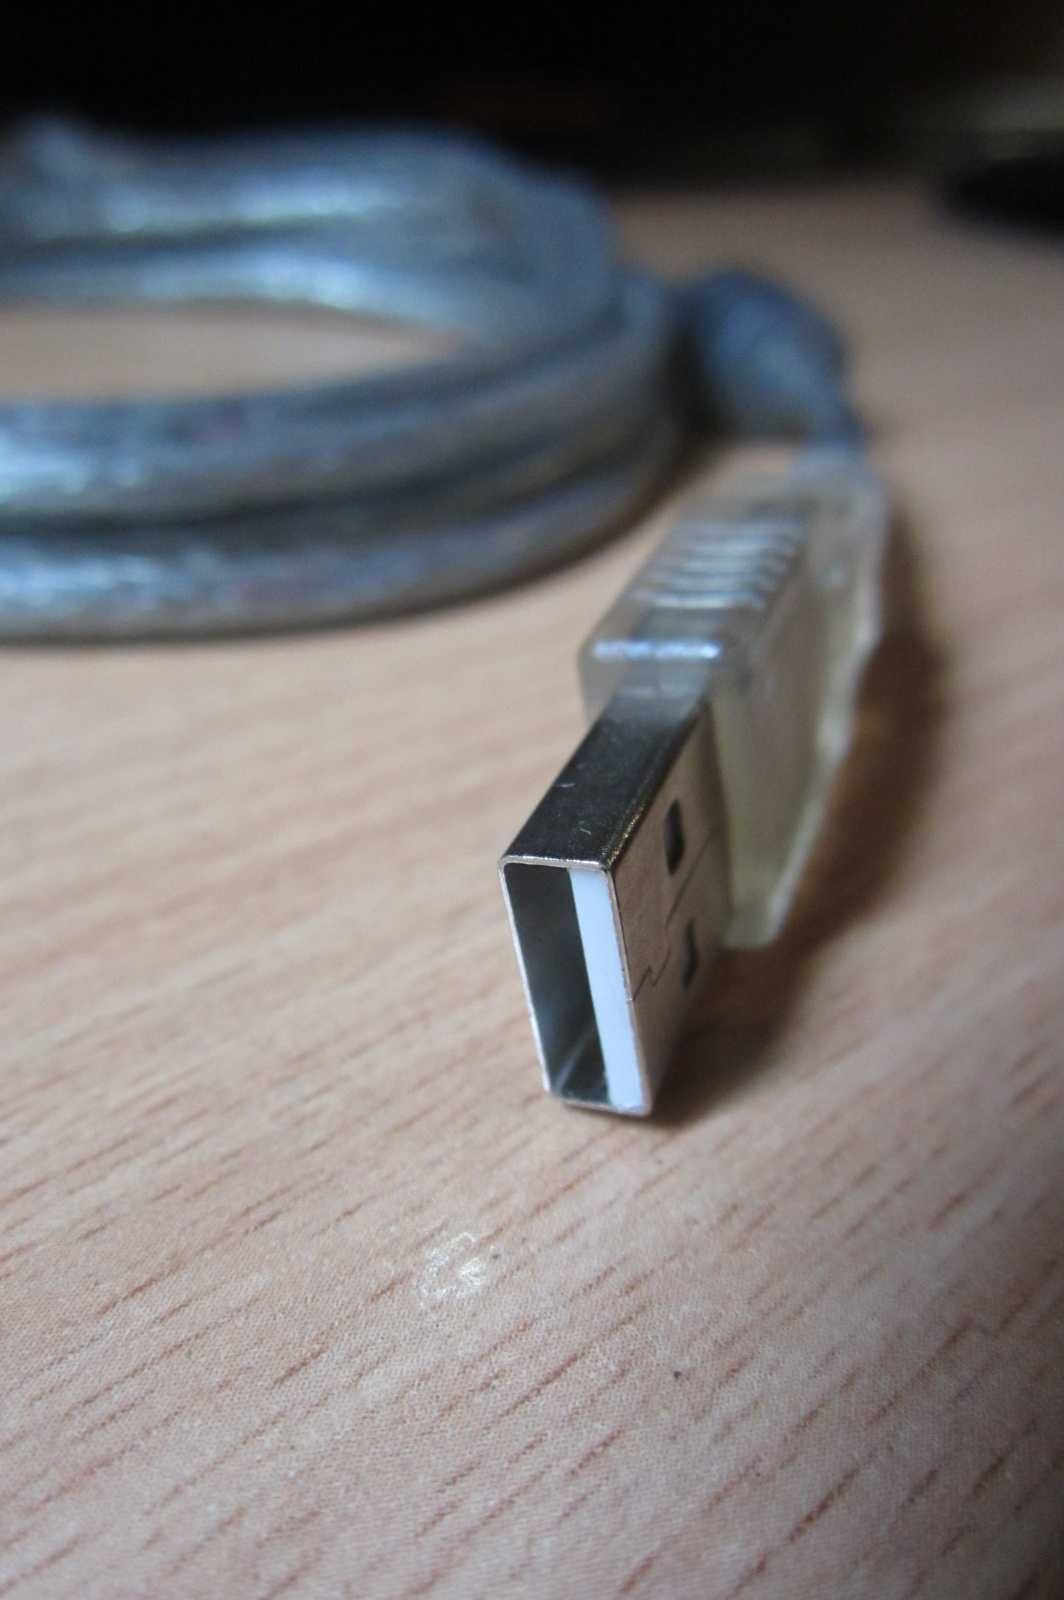 USB Удлинитель USB с фильтром от помех, длинна 3 метра